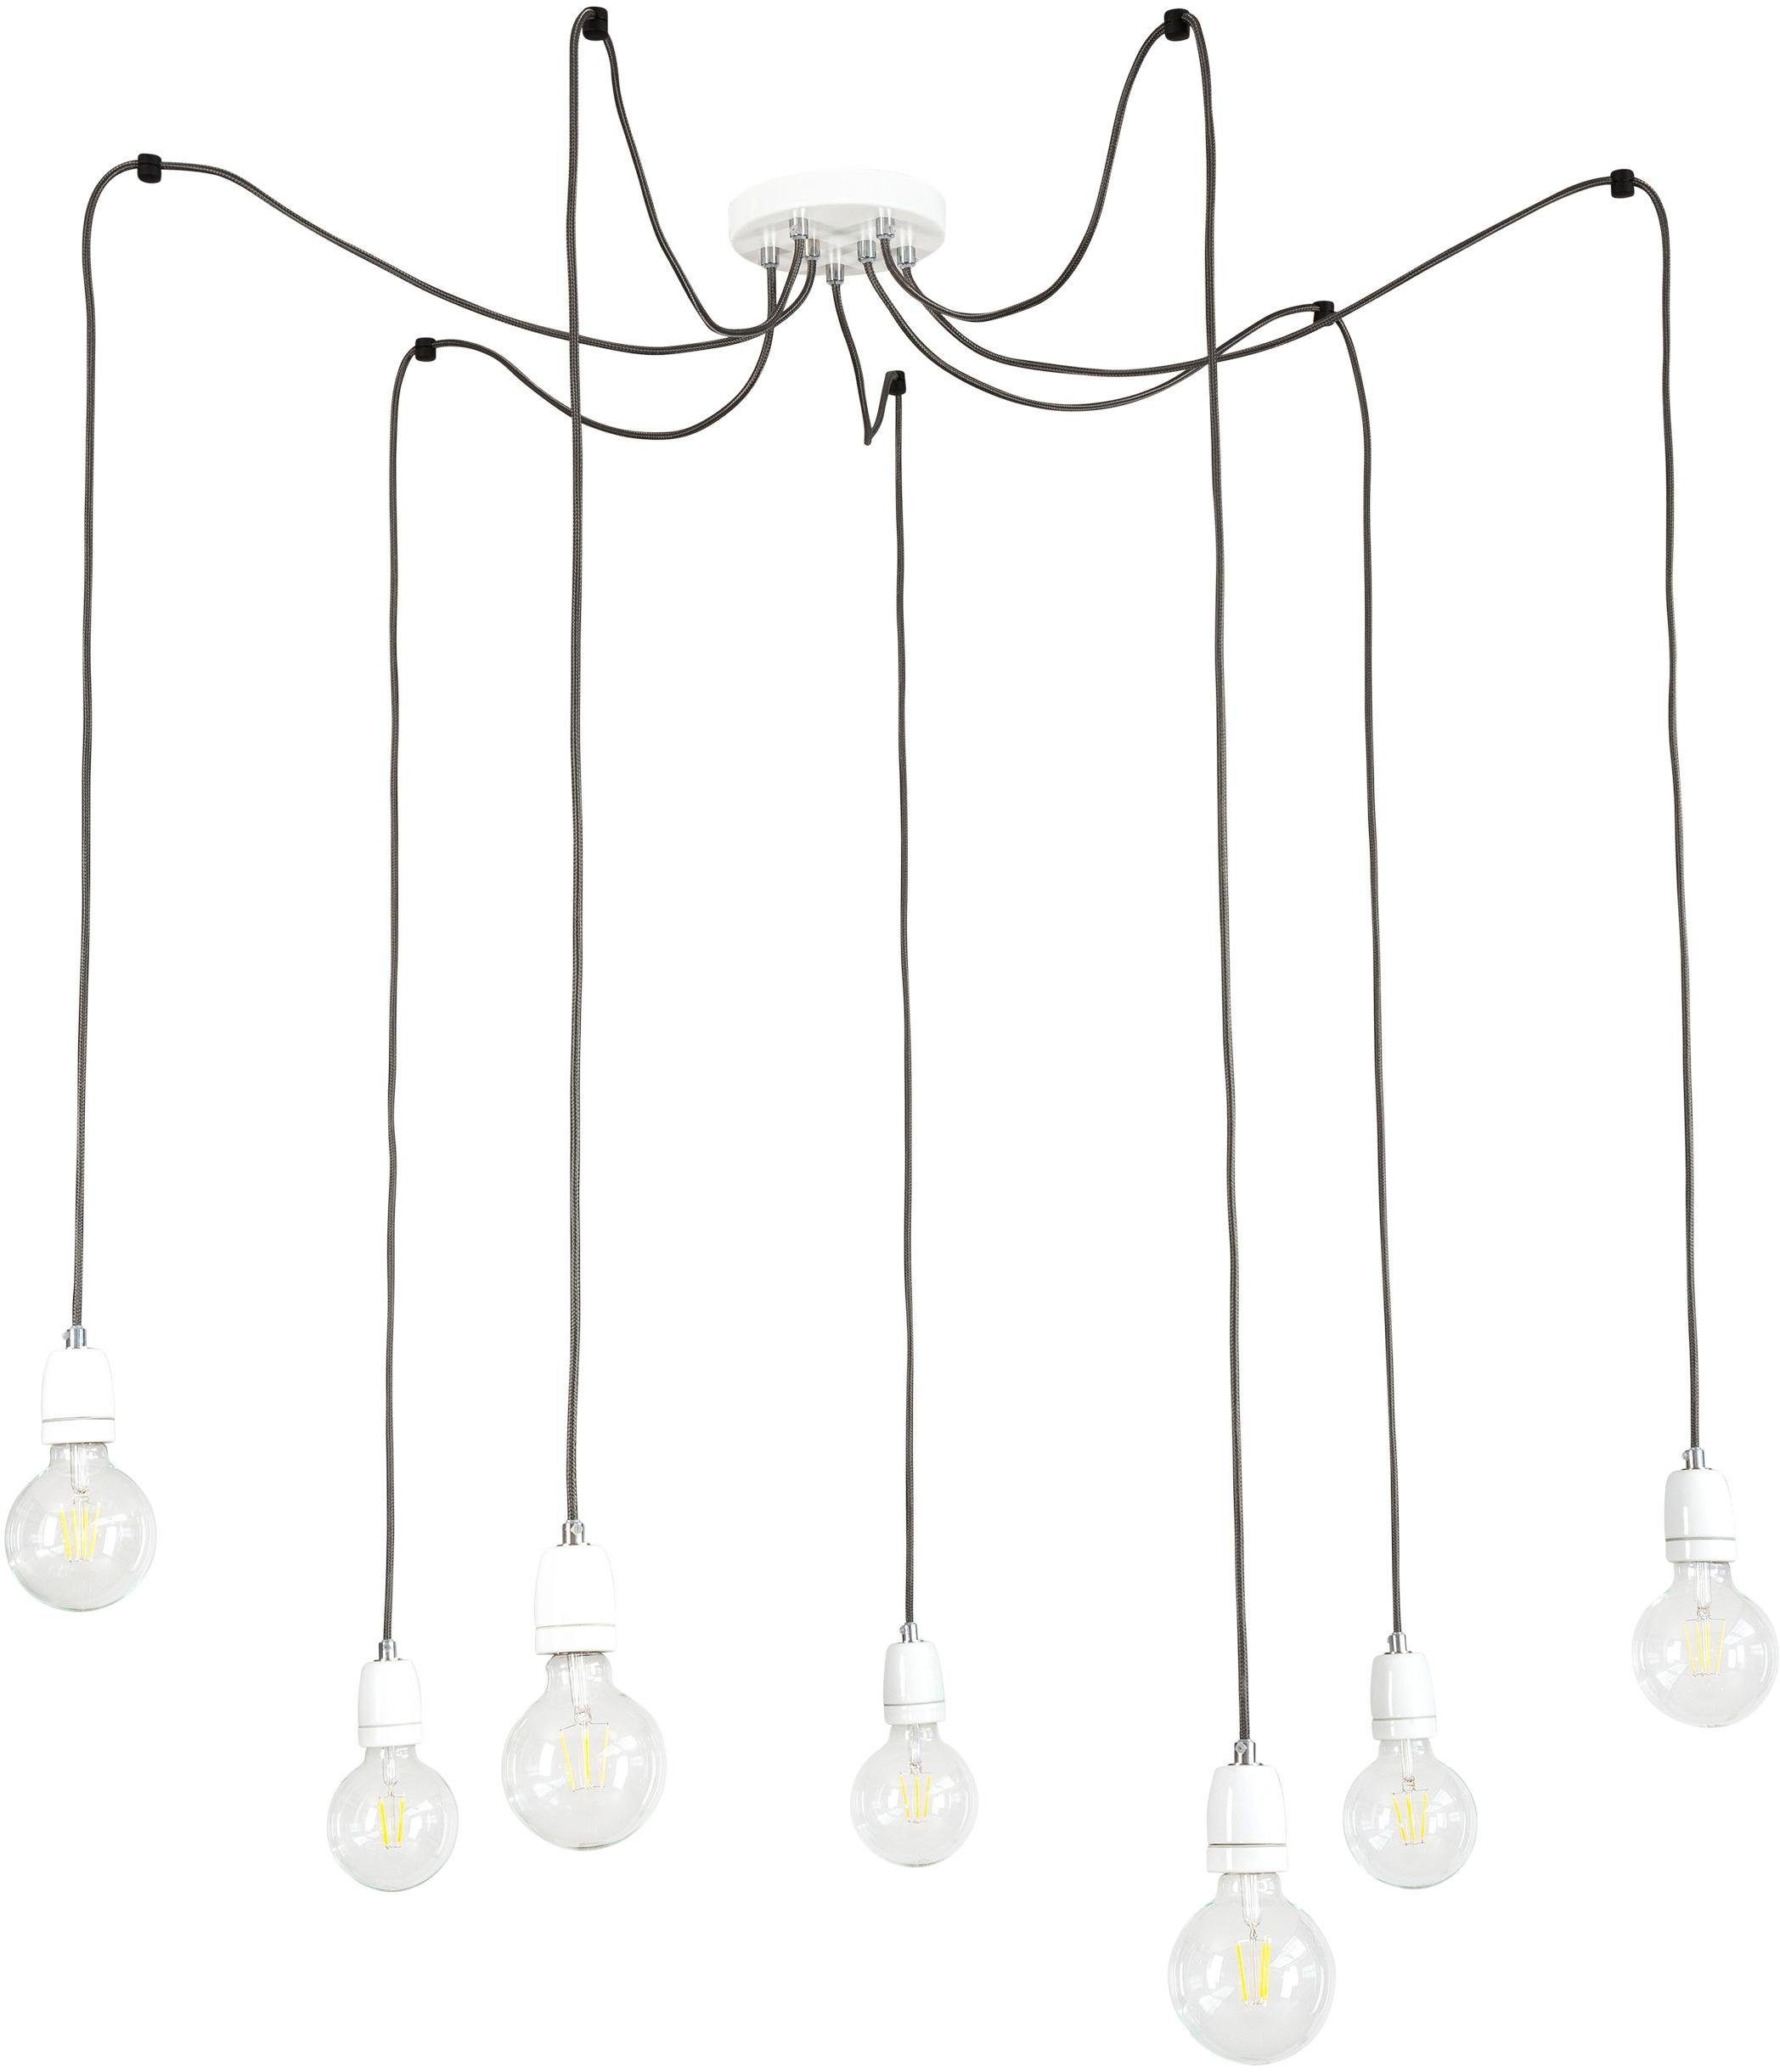 BRITOP LIGHTING Pendelleuchte PORCIA SPIDER, ohne Leuchtmittel, Hängeleuchte, Retro-Design mit Porzellan, Textilkabel in Anthrazit